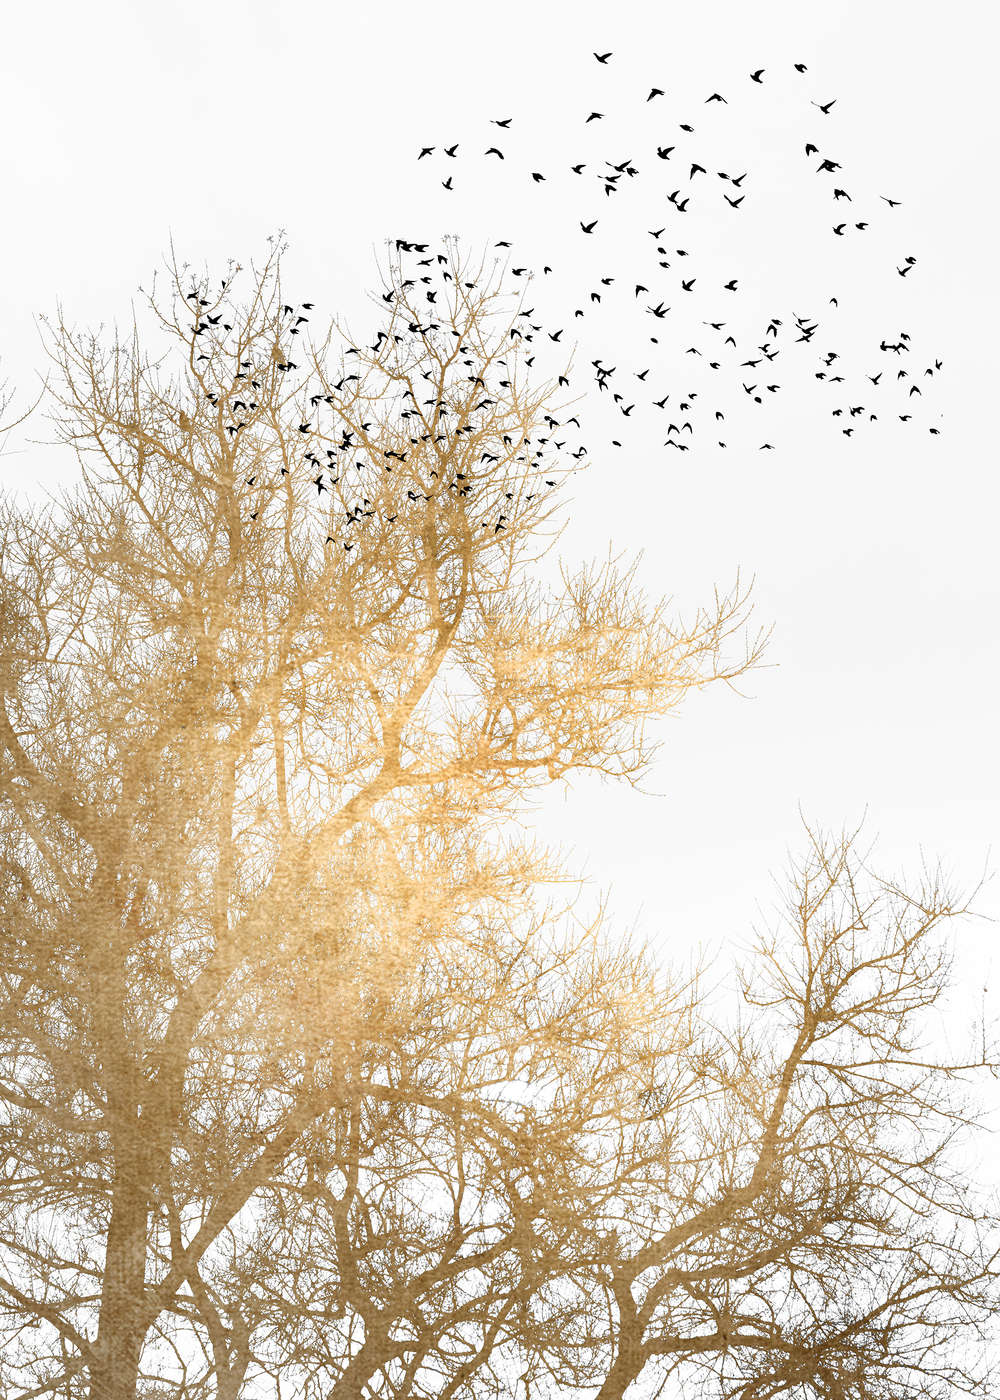             Fototapete mit goldenen Bäumen und Vogelschwarm
        